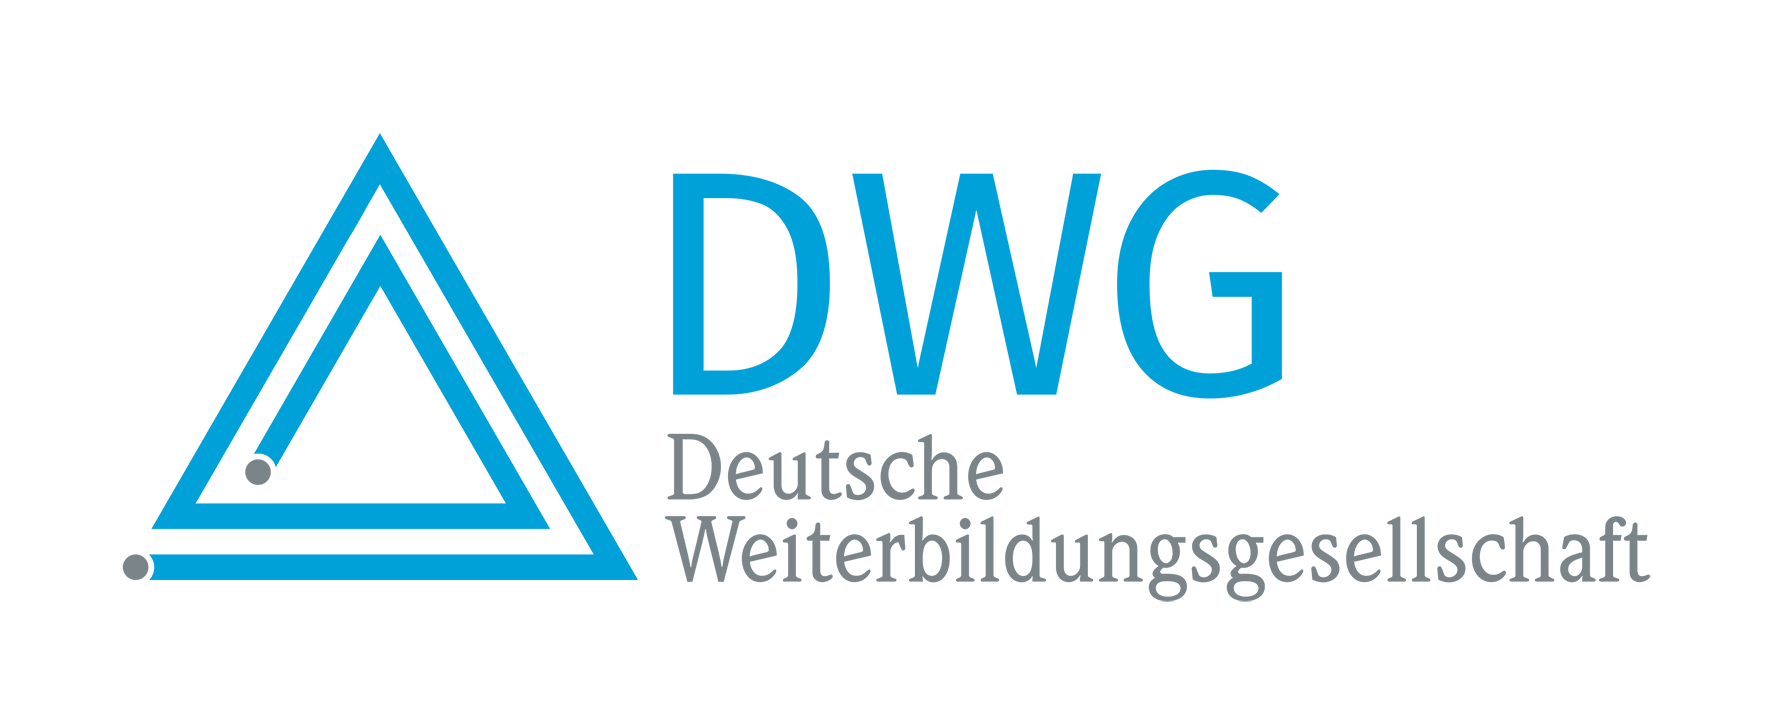 Deutsche Weiterbildungsgesellschaft Logo